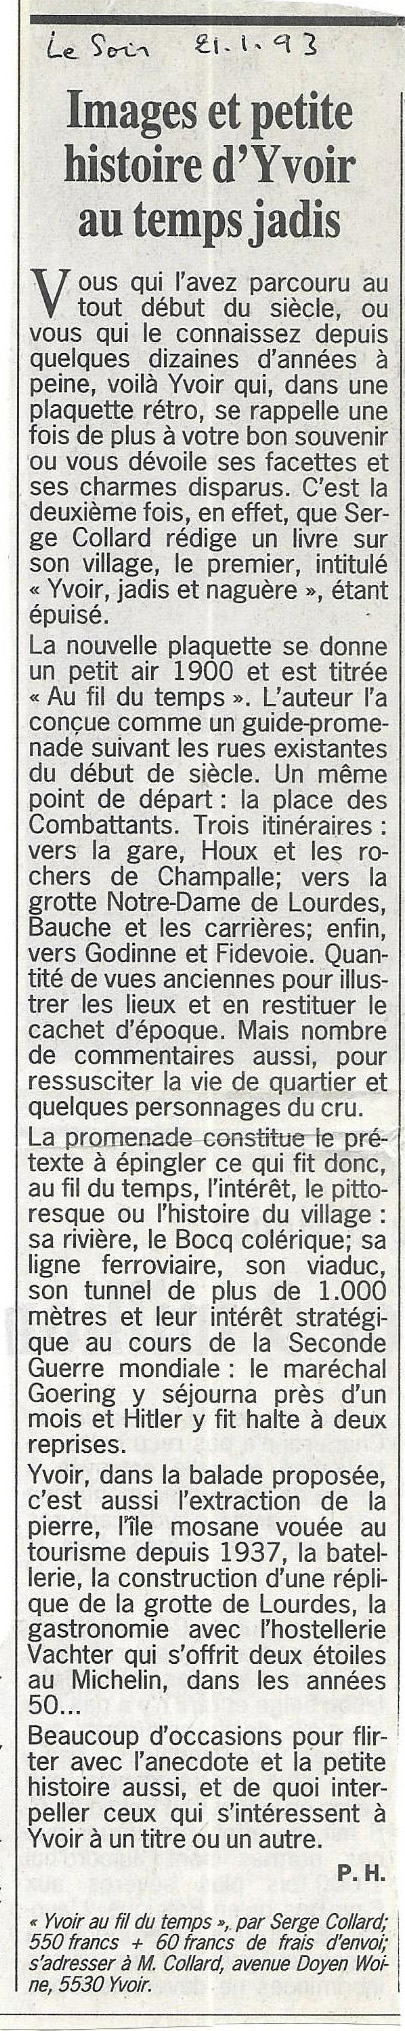 1993.1.21 - Yvoir au fil du temps - Le Soir.jpg